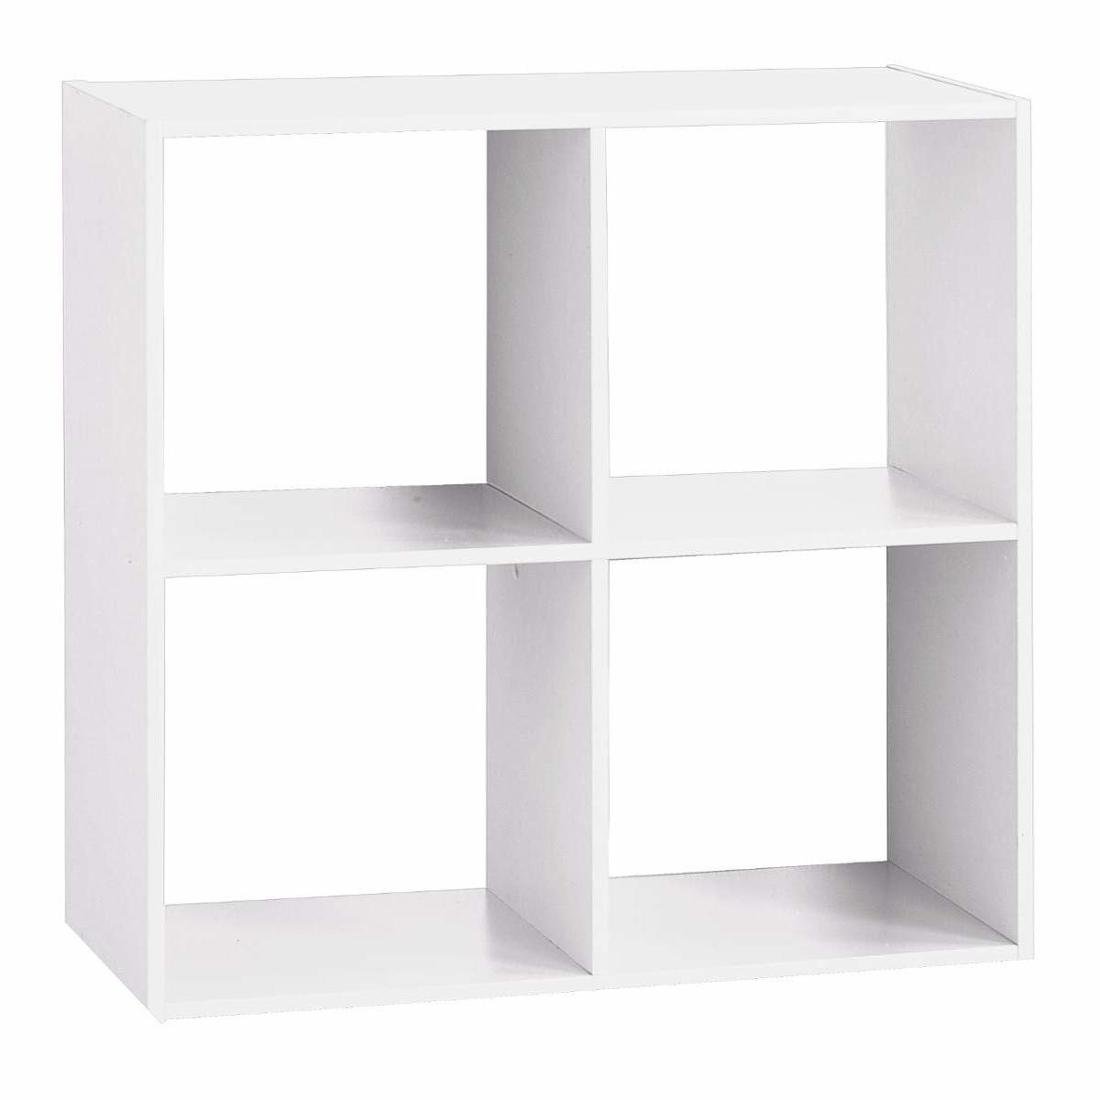 Фото - Полиця настінна Półka dekoracyjna 5FIVE SIMPLE SMART, kwadratowa, biała, 68x68 cm